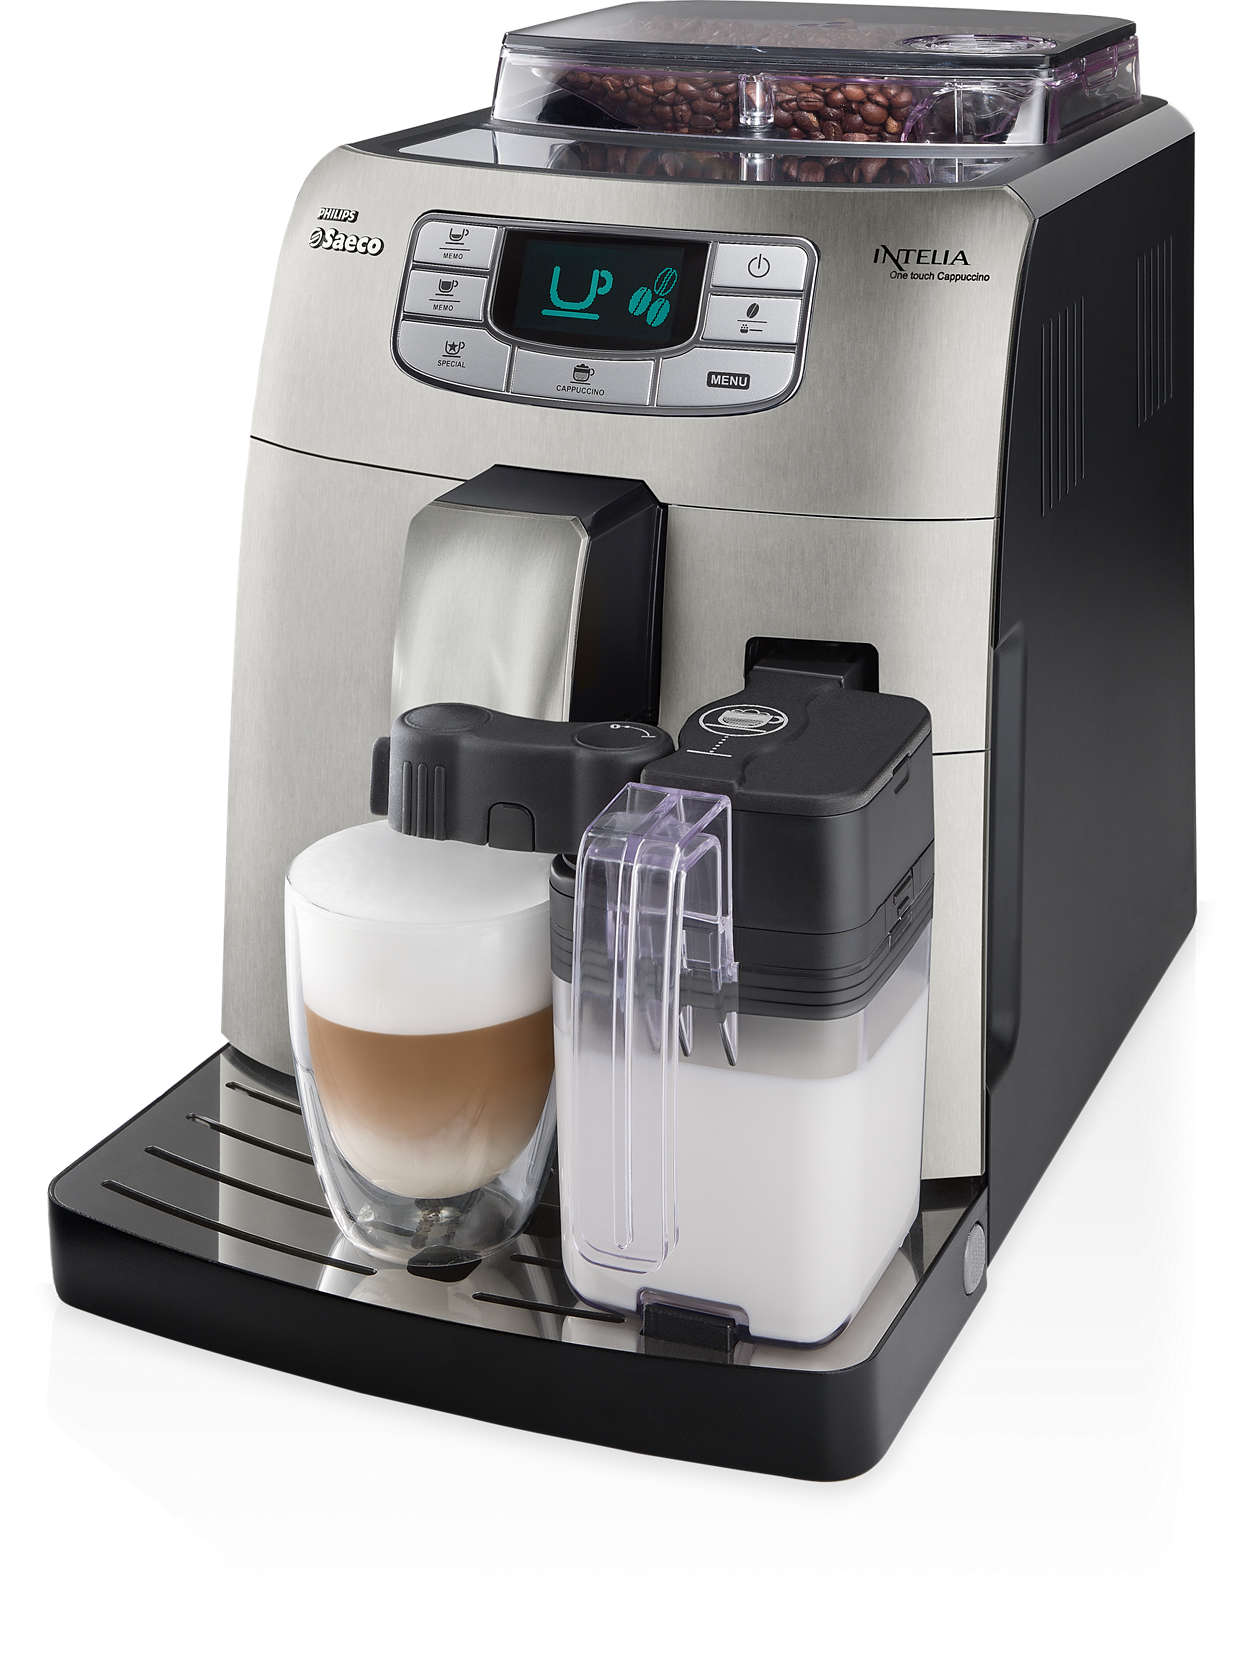 Advance revelation Bruise Intelia Super-automatic espresso machine HD8753/87 | Saeco